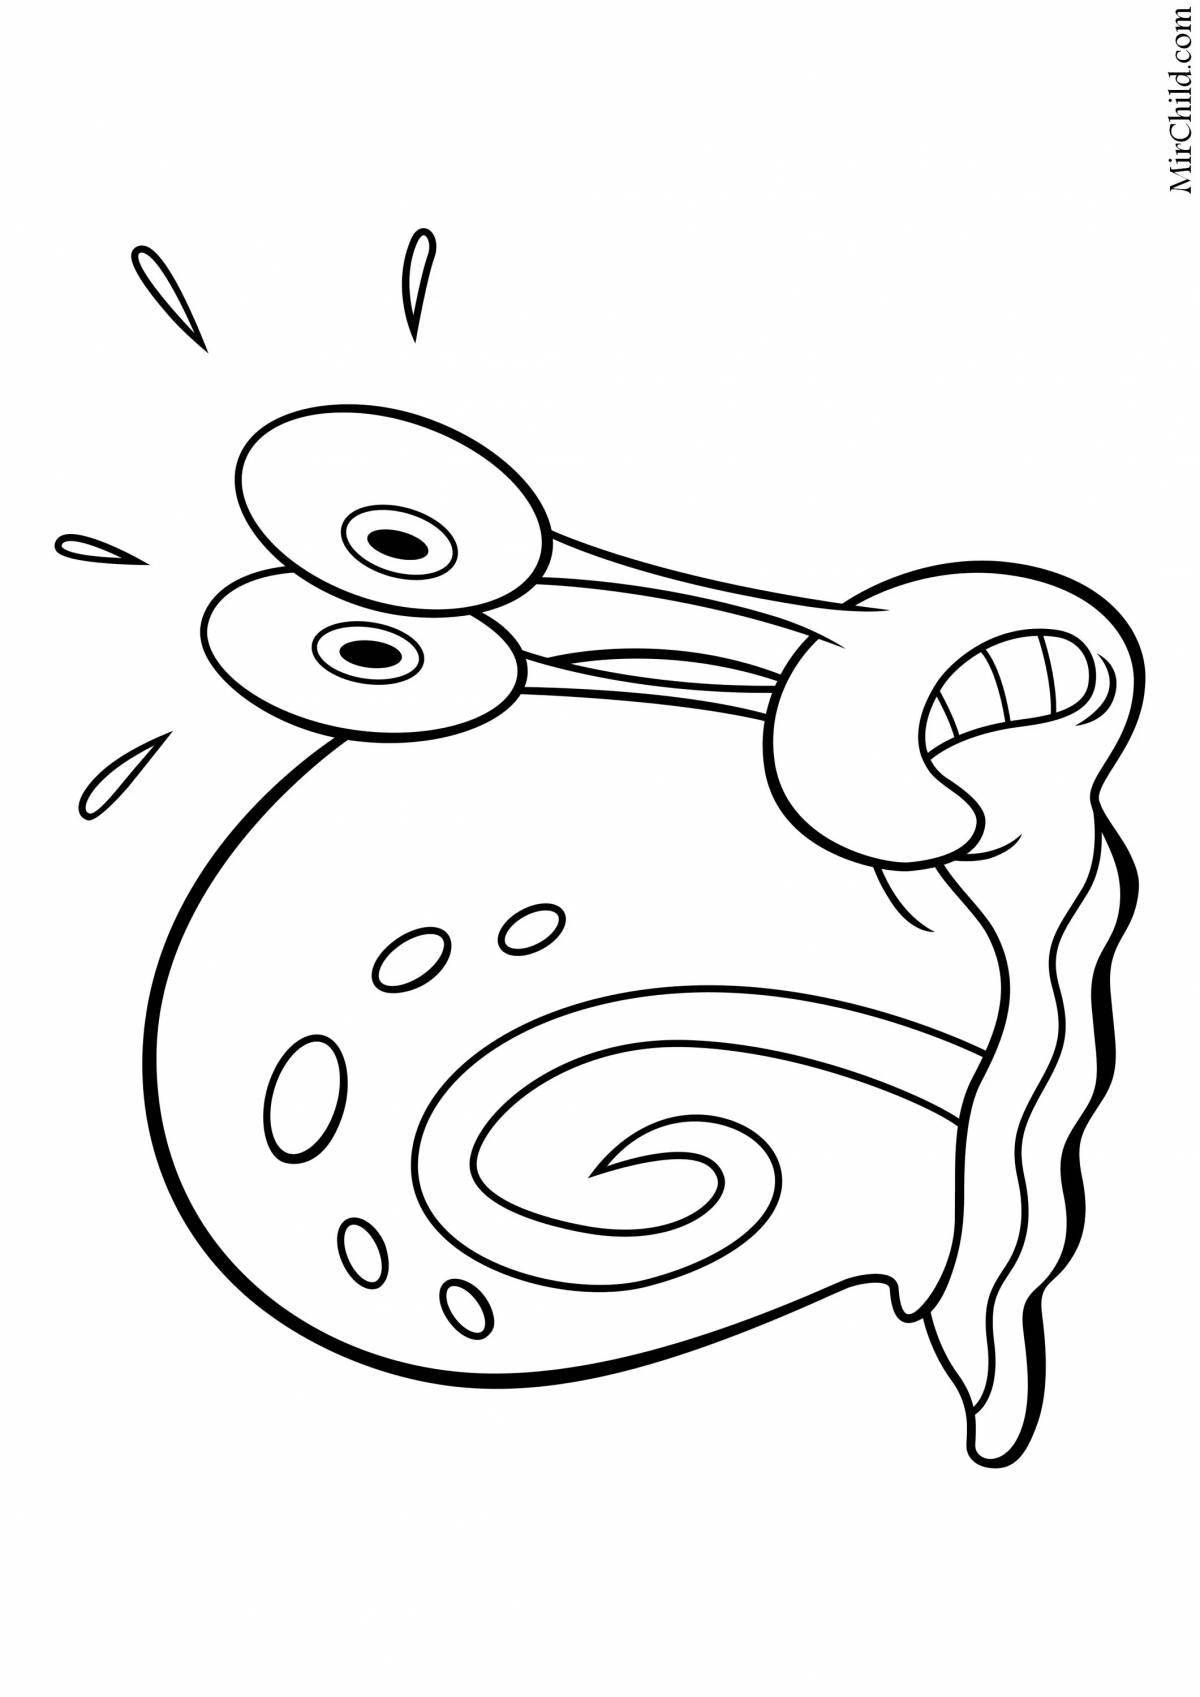 Playful snail gary